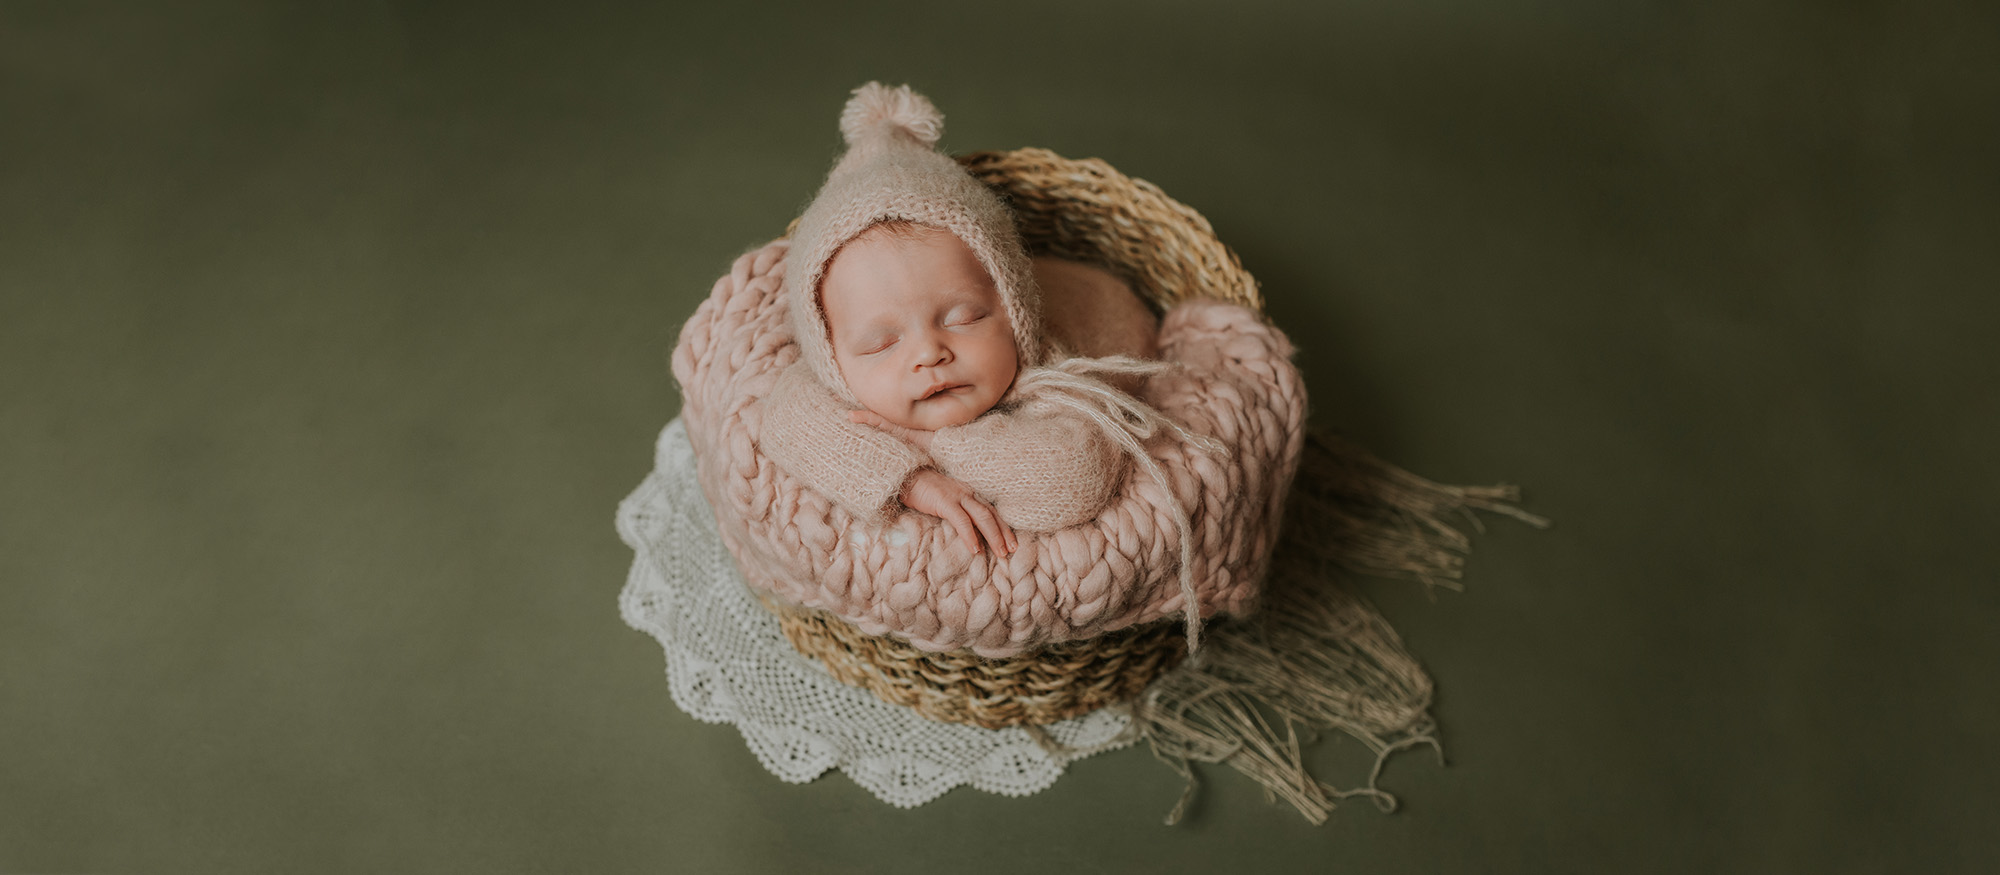 Søt nyfødt jente med rosa strikket klær sover i en kurv på grønn bakgrunn